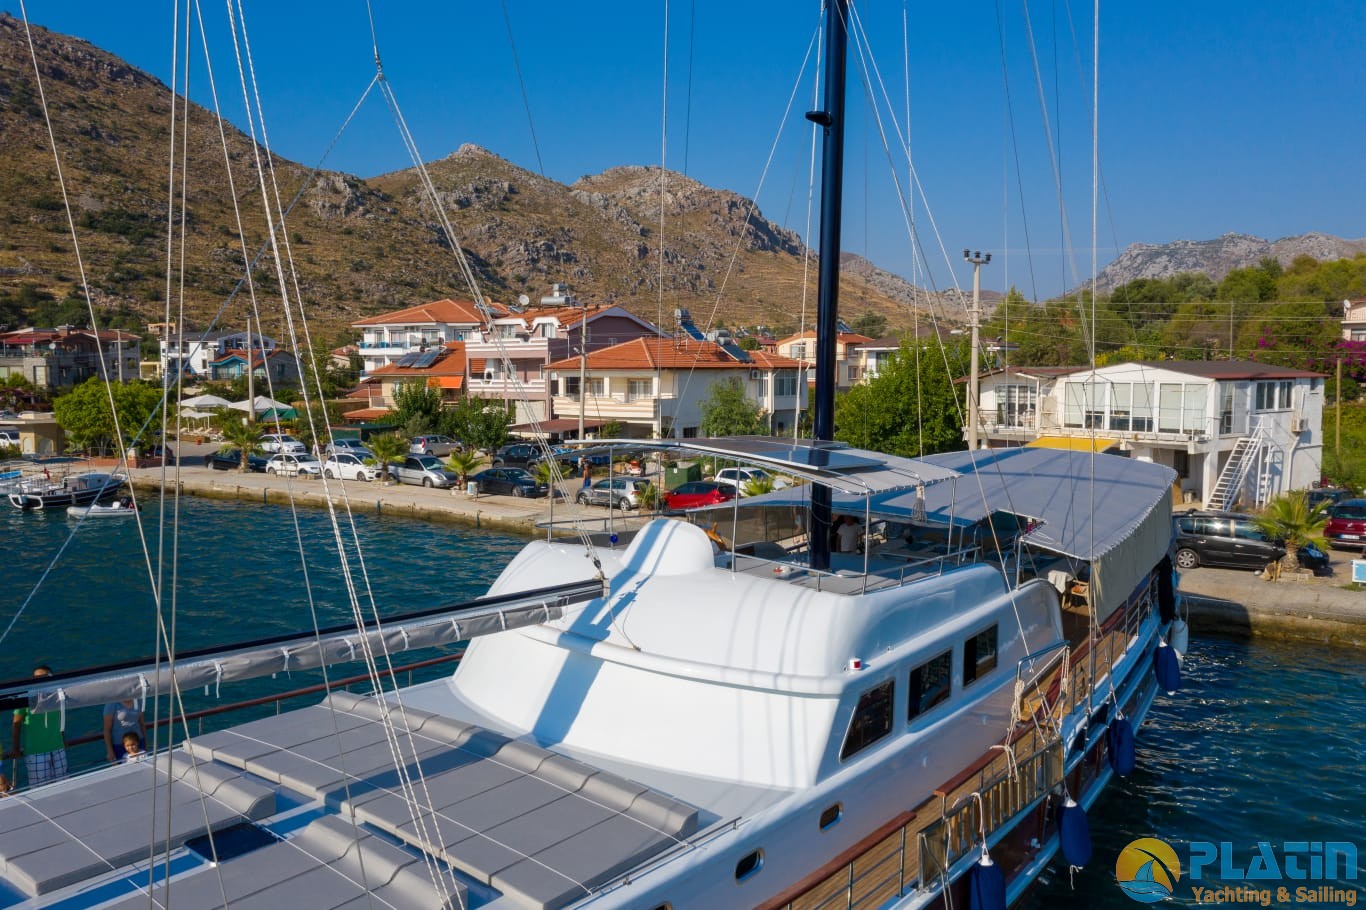 Queen Duru Gulet Yacht